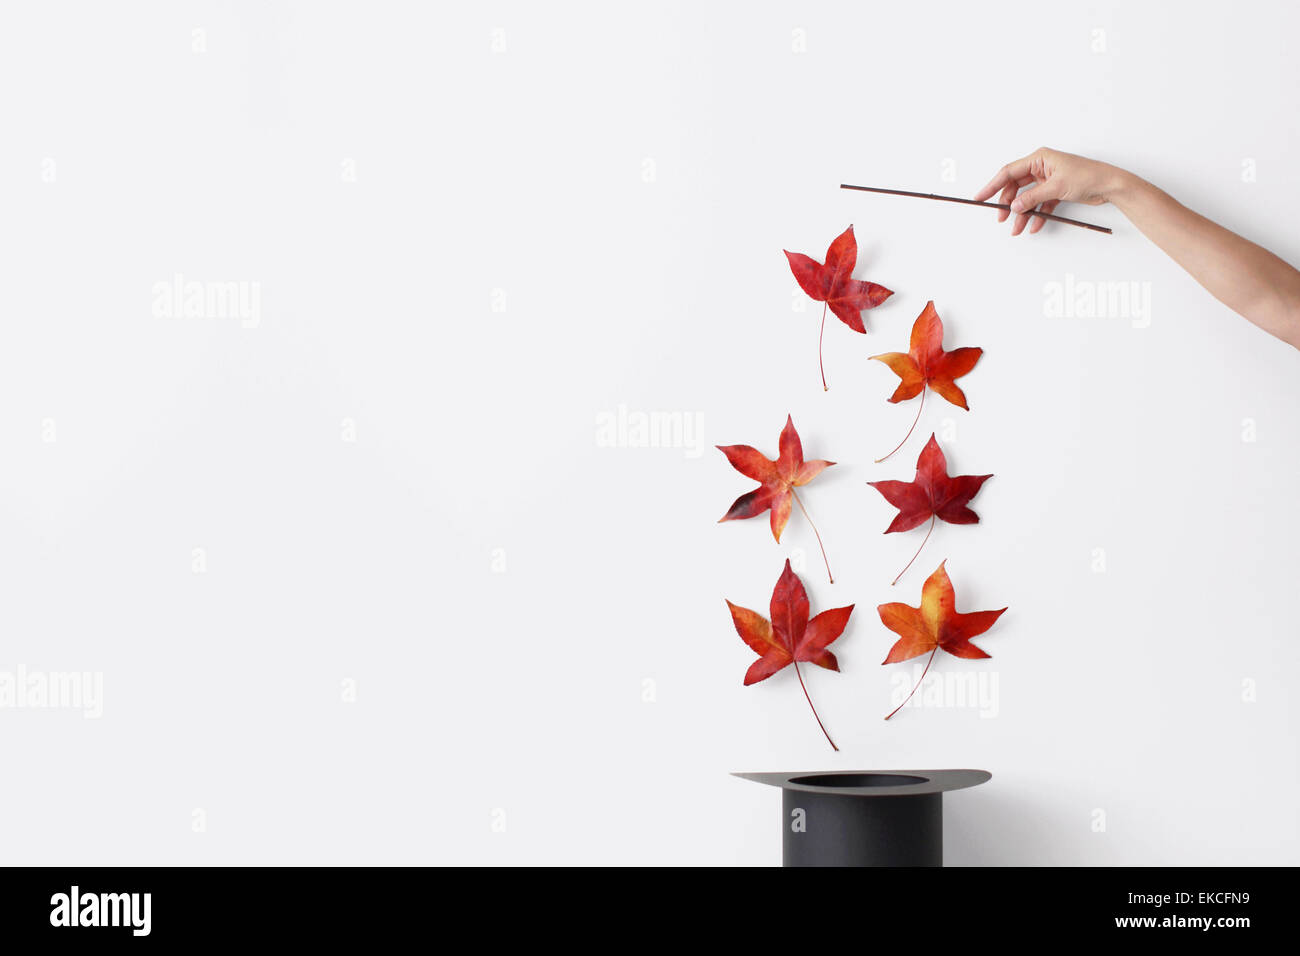 Mano de mujer sosteniendo una varita mágica tirando hojas de otoño fuera de un sombrero Foto de stock